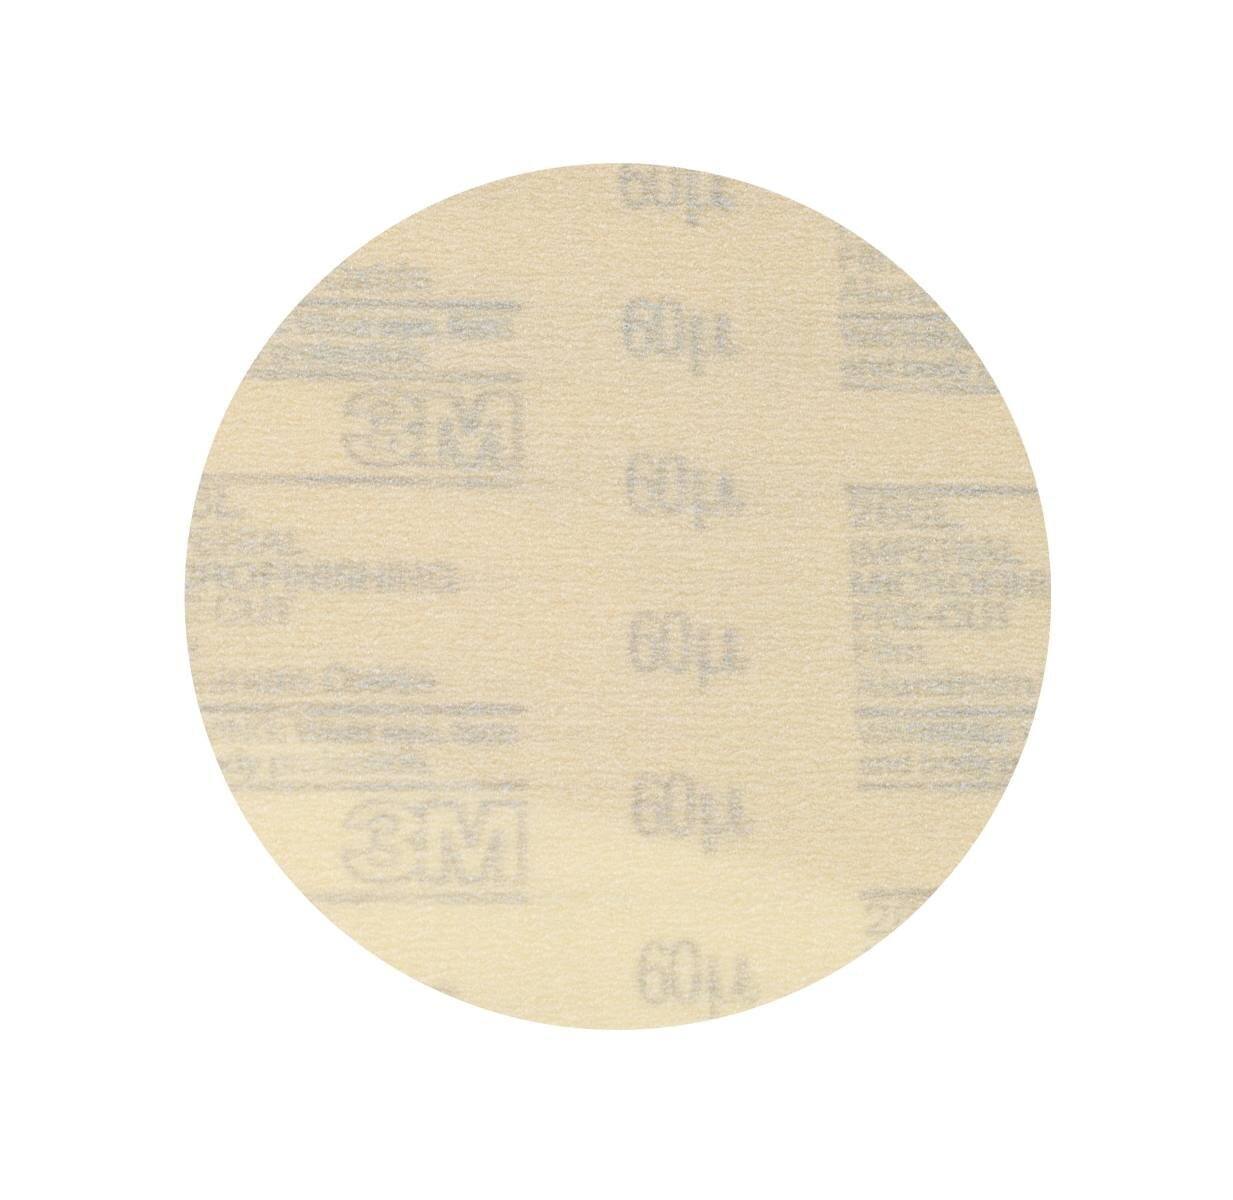 Disco de película de microacabado 3M Hookit de gancho y bucle 266L, 150 mm, no perforado, 30 micras #00047